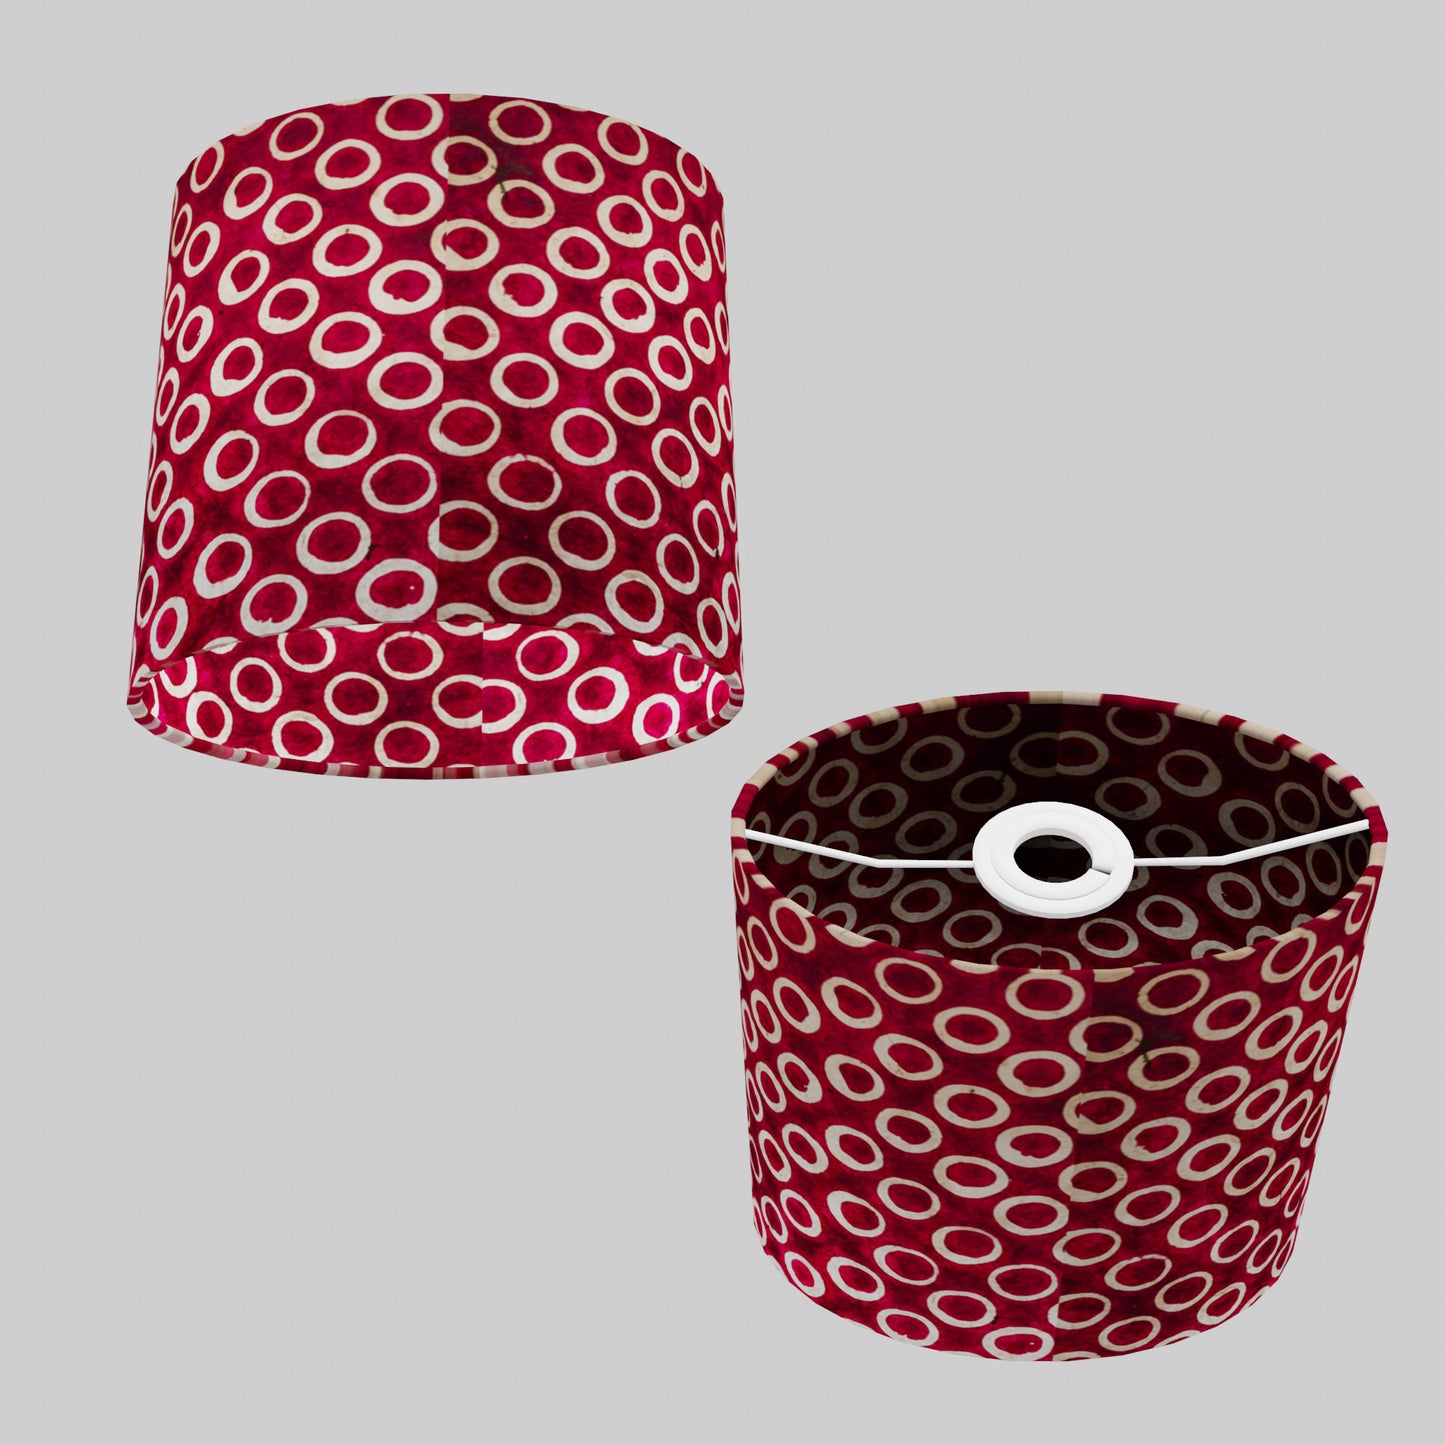 Oval Lamp Shade - P73 - Batik Cranberry Circles, 20cm(w) x 20cm(h) x 13cm(d)